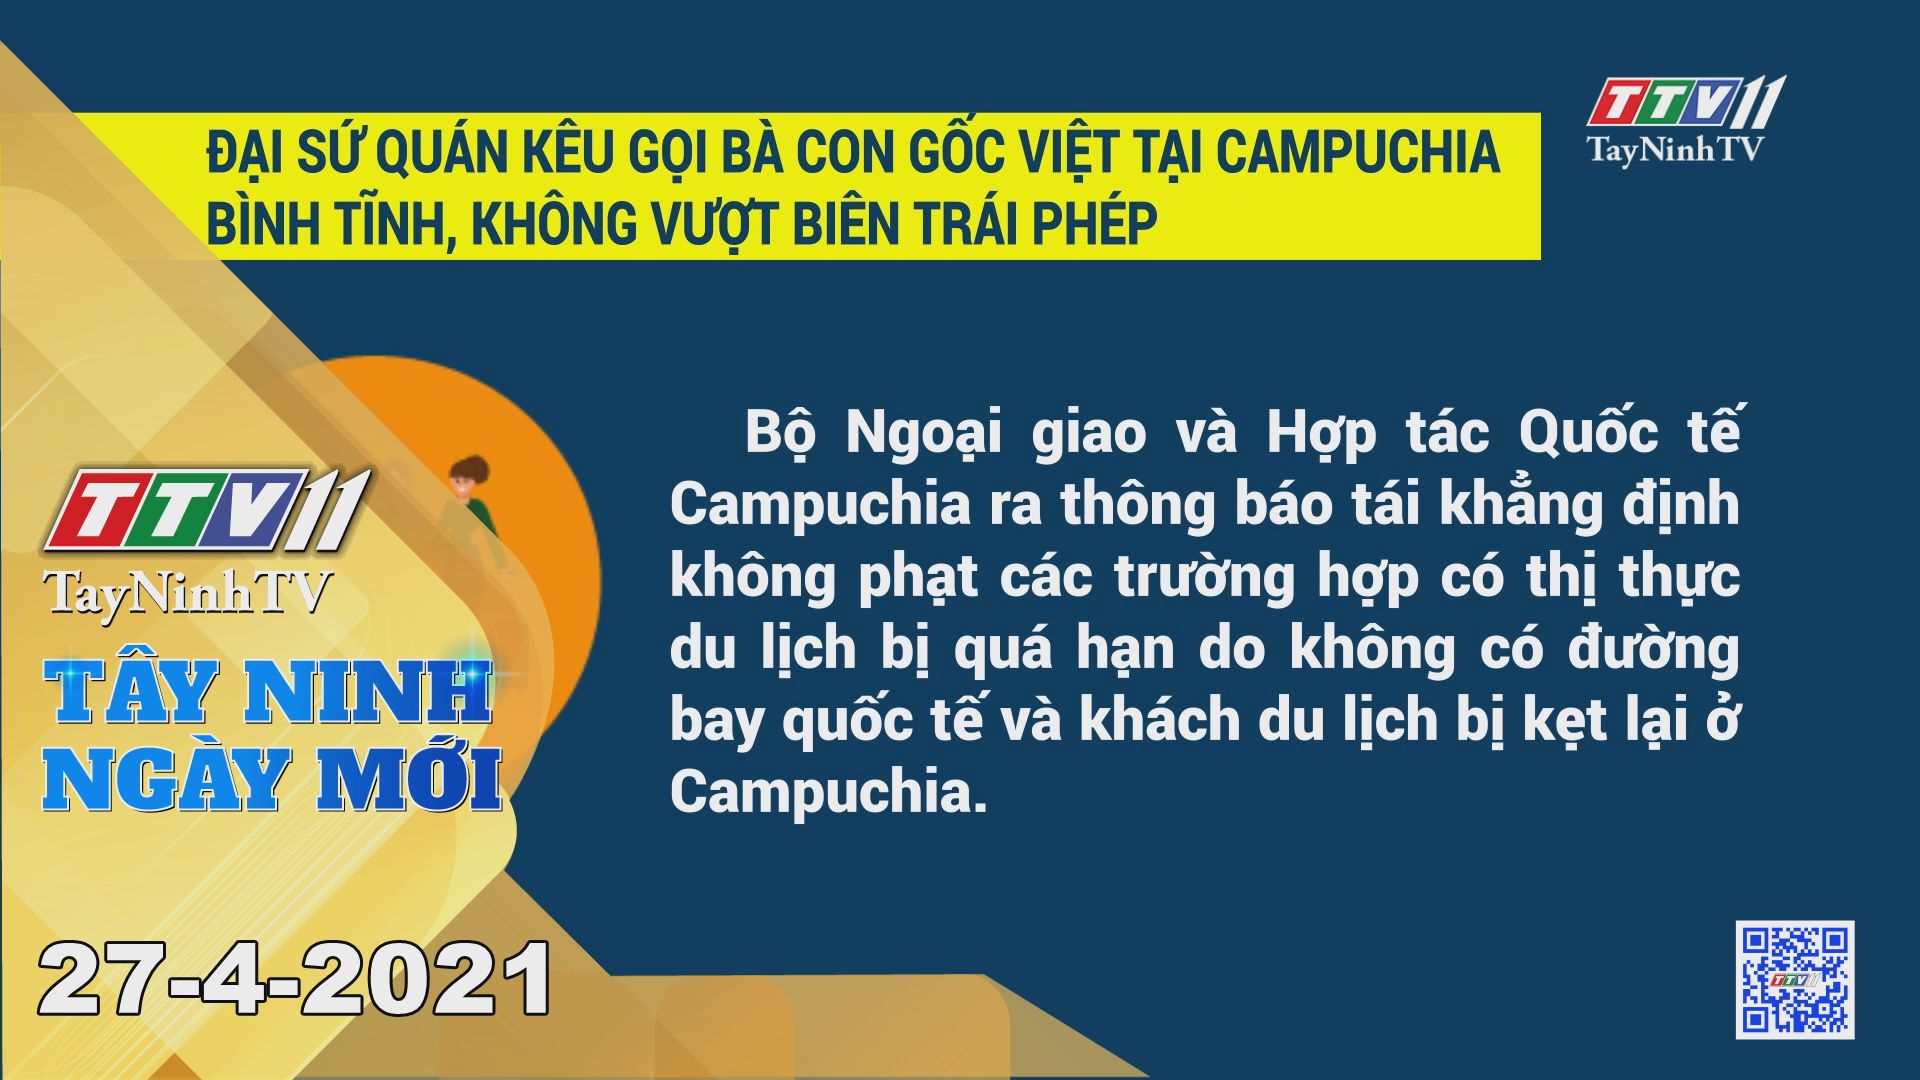 ây Ninh Ngày Mới 27-4-2021 | Tin tức hôm nay | TayNinhTV